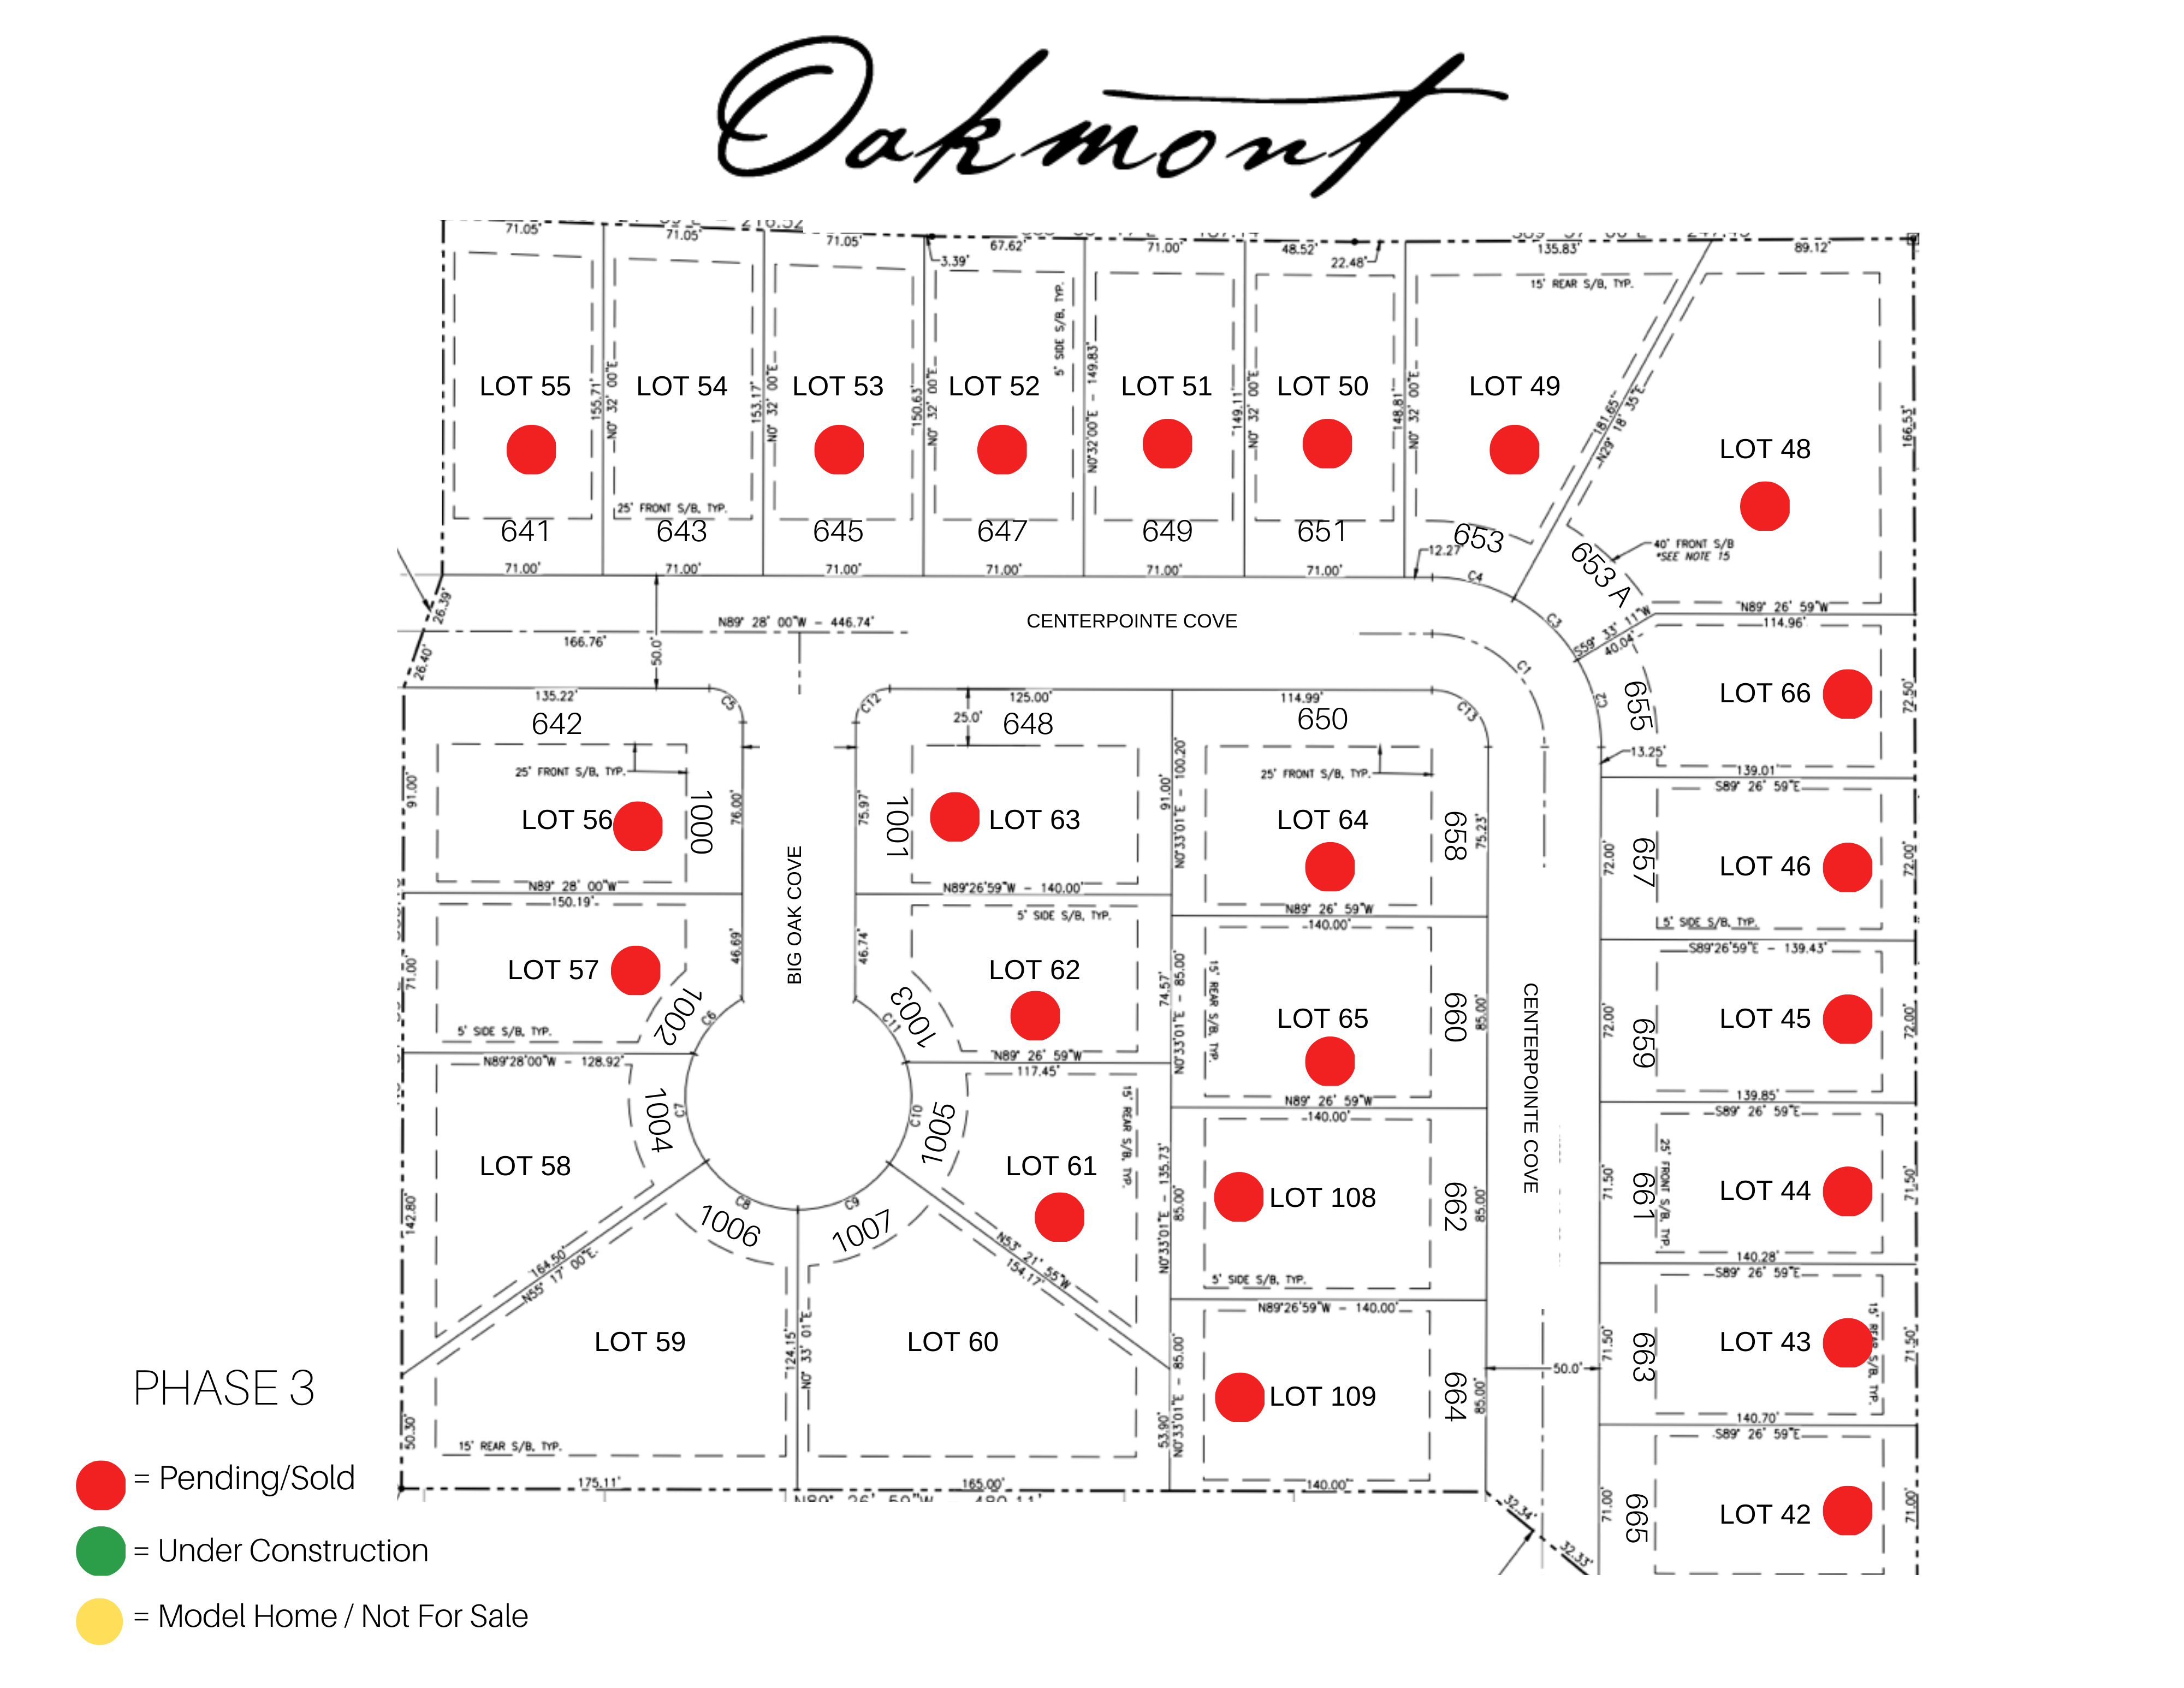 Oakmont Phase 3 Availability Plat